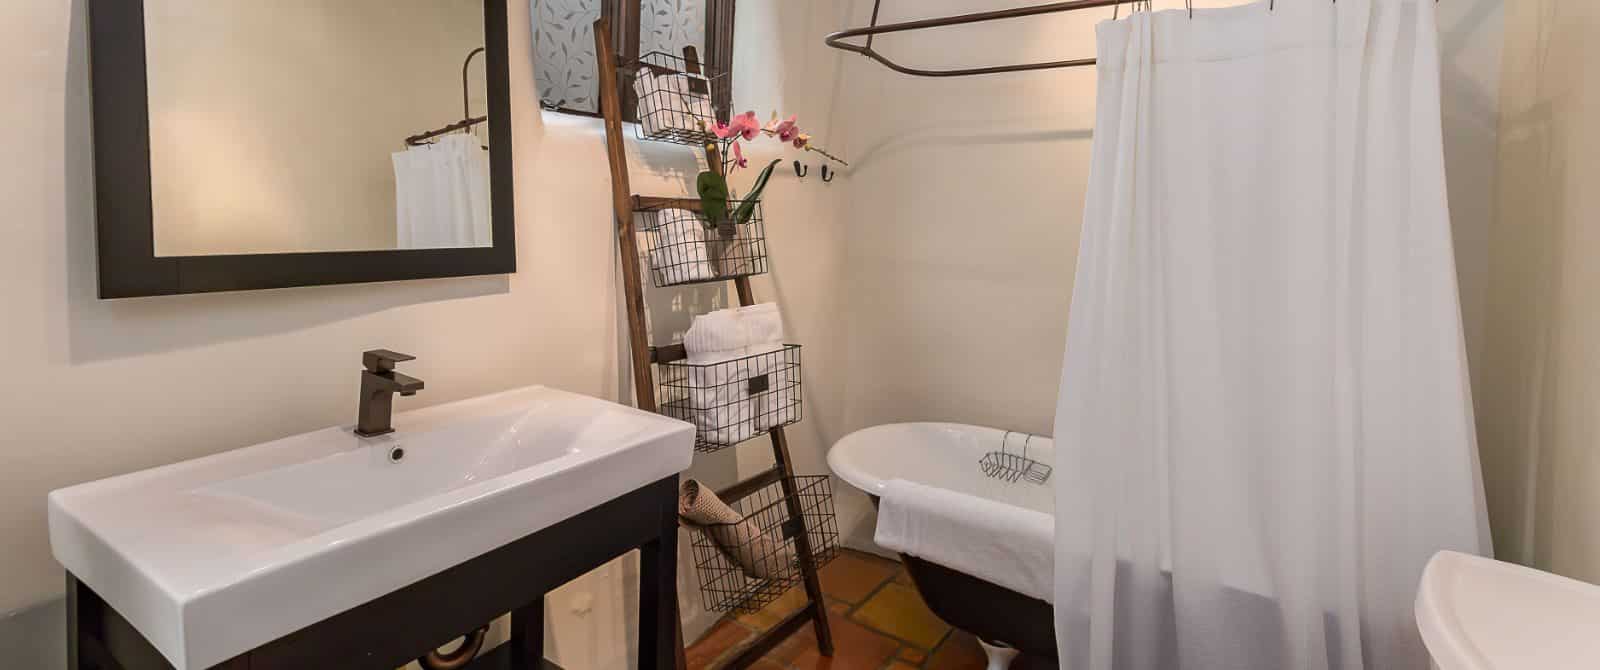 Saltillo-floor, plaster-wall bathroom with vanity in dark wood, footed tub and ladder towel rack.